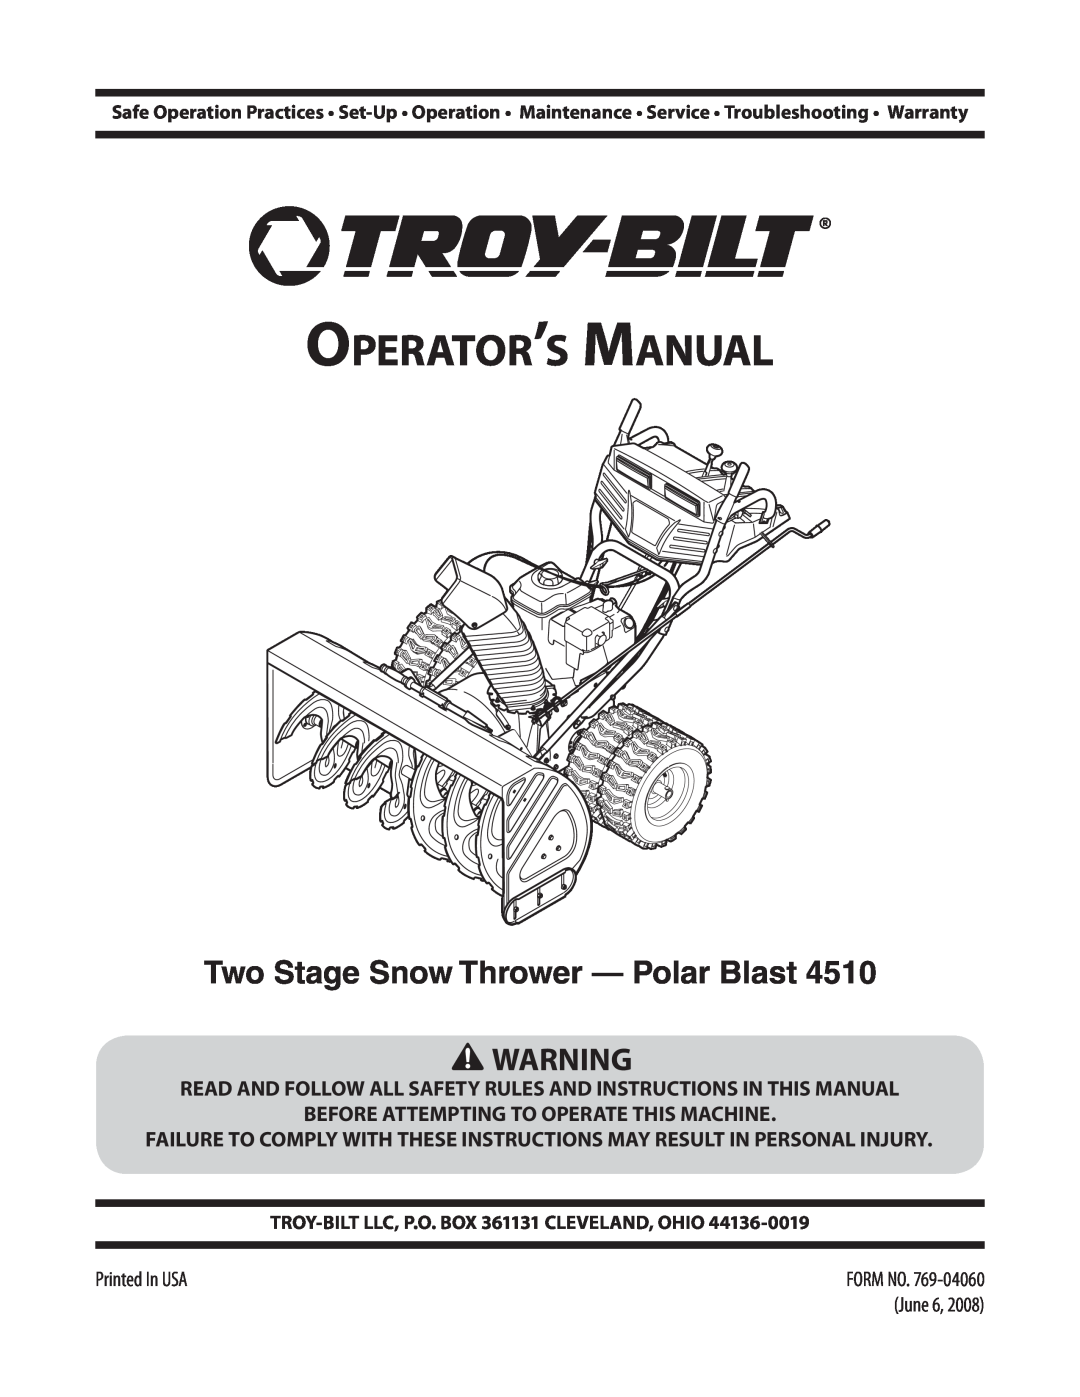 Troy-Bilt 4510 warranty Two Stage Snow Thrower - Polar Blast, Operator’s Manual 